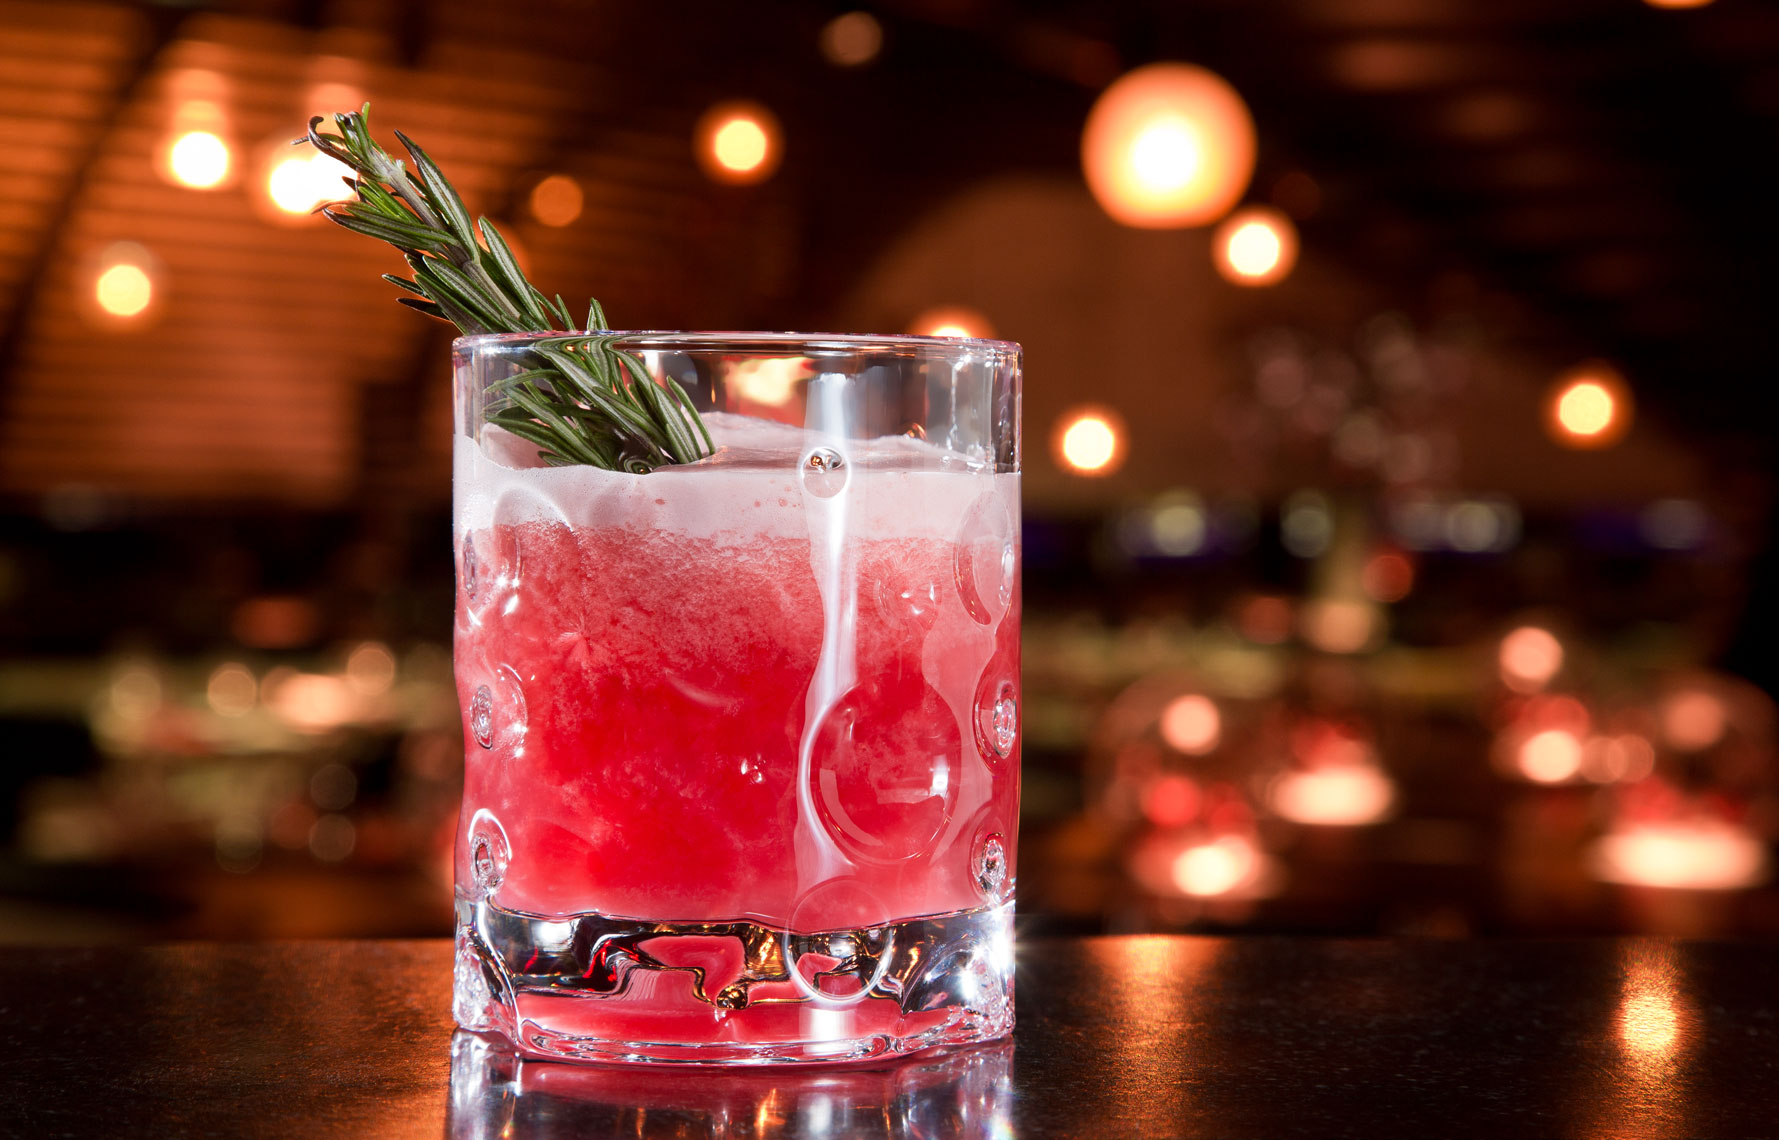 Rosebery STK Cocktail